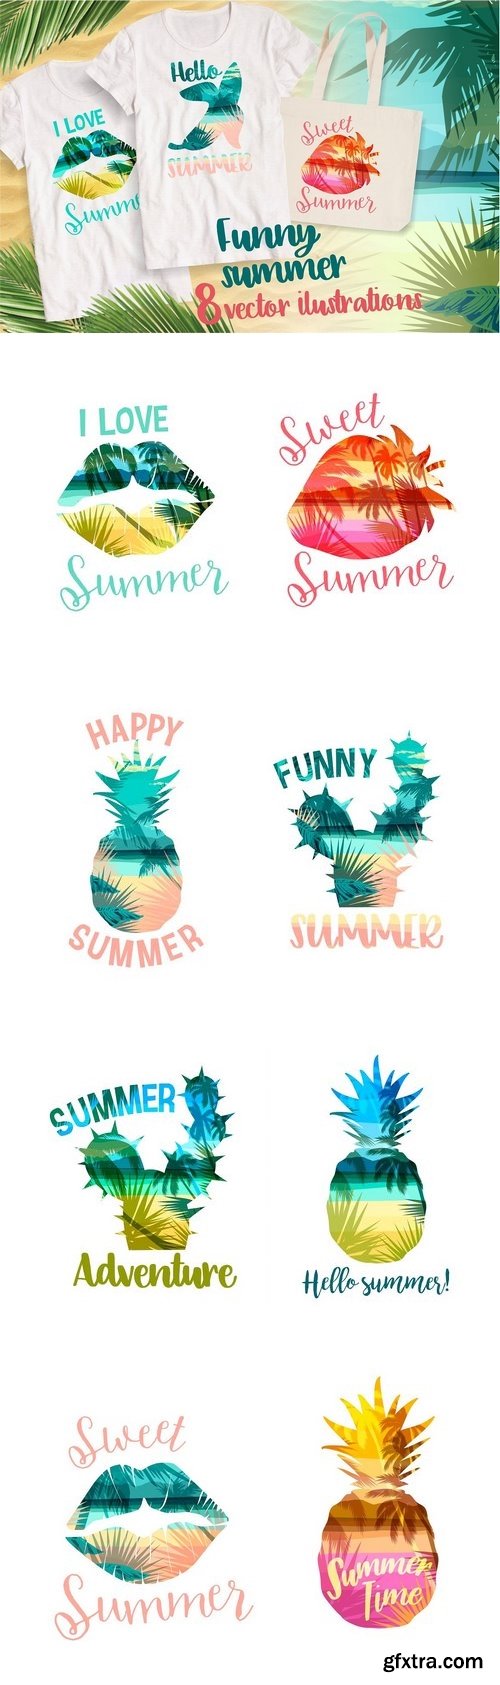 CM - Funny summer! 8 vector illustrations 1546284